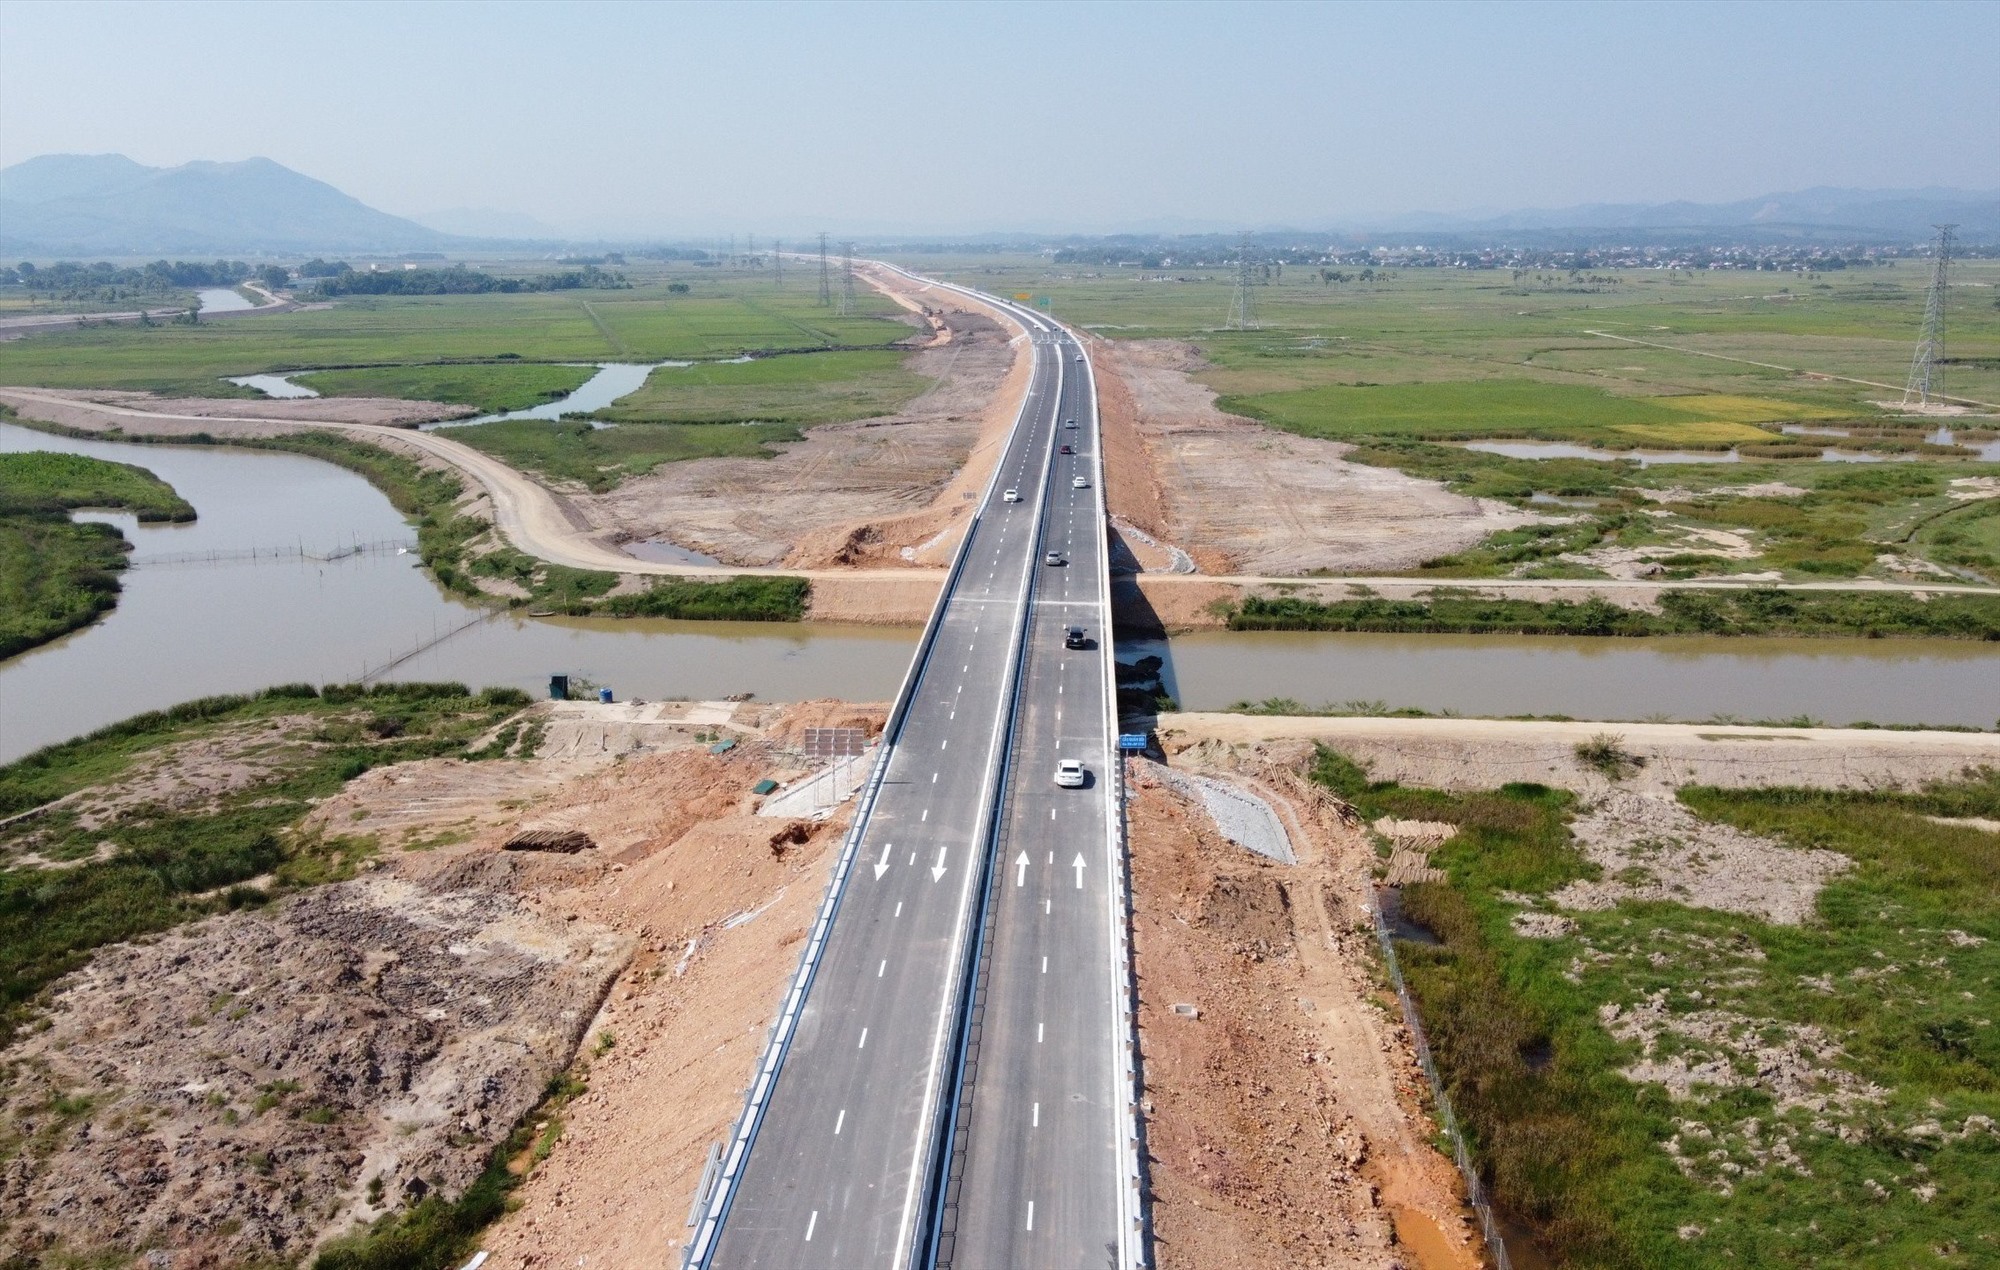 Theo đó vào ngày 1.9, tuyến cao tốc Quốc lộ 45 - Nghi Sơn và Nghi Sơn - Diễn Châu chính thức thông xe, giúp nhiều phương tiện di chuyển dễ dàng trên cung đường từ Hạ Nội về tỉnh Thanh Hóa, Nghệ An và các tỉnh phía Nam. Ảnh: Quách Du